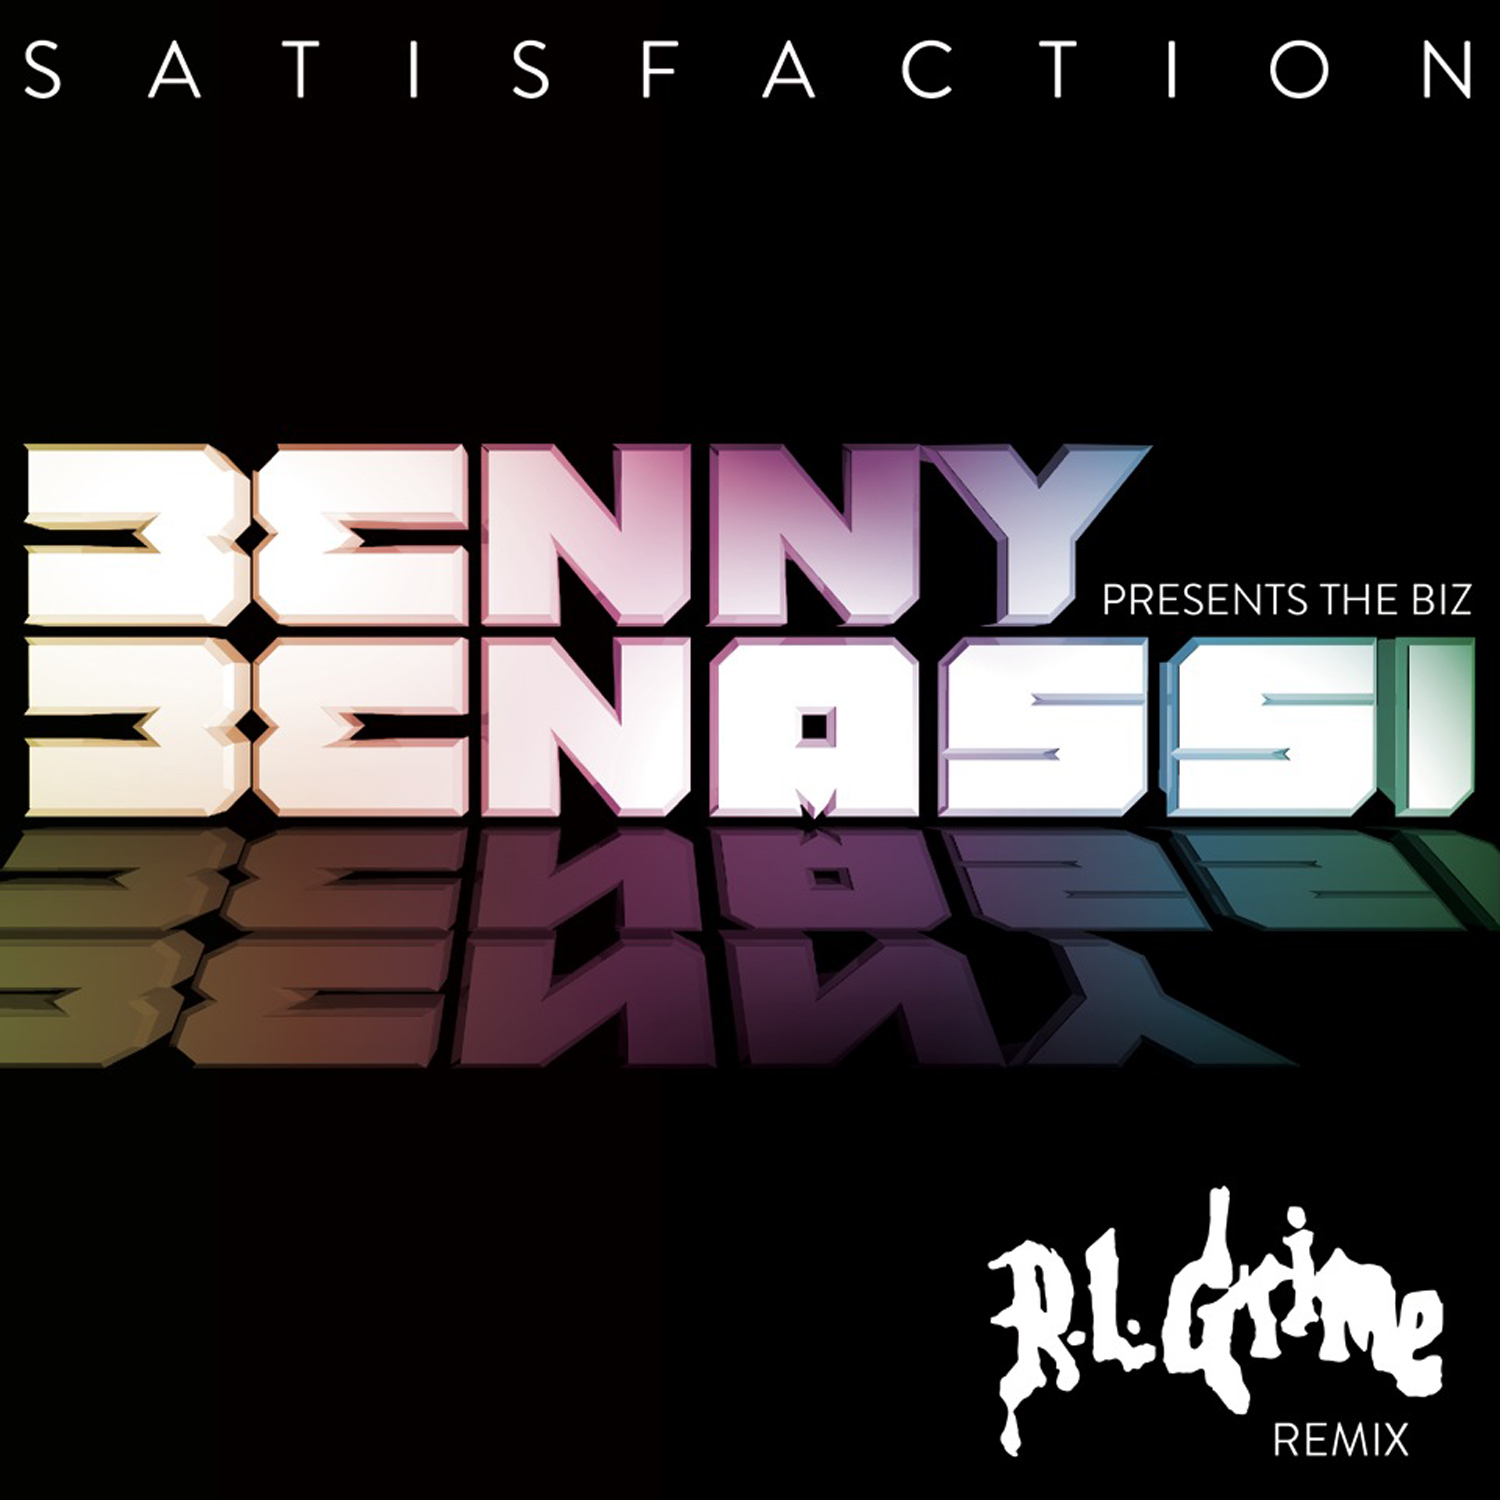 ດາວໂຫລດ Satisfaction (RL Grime Remix) - Benny Benassi (Preview)